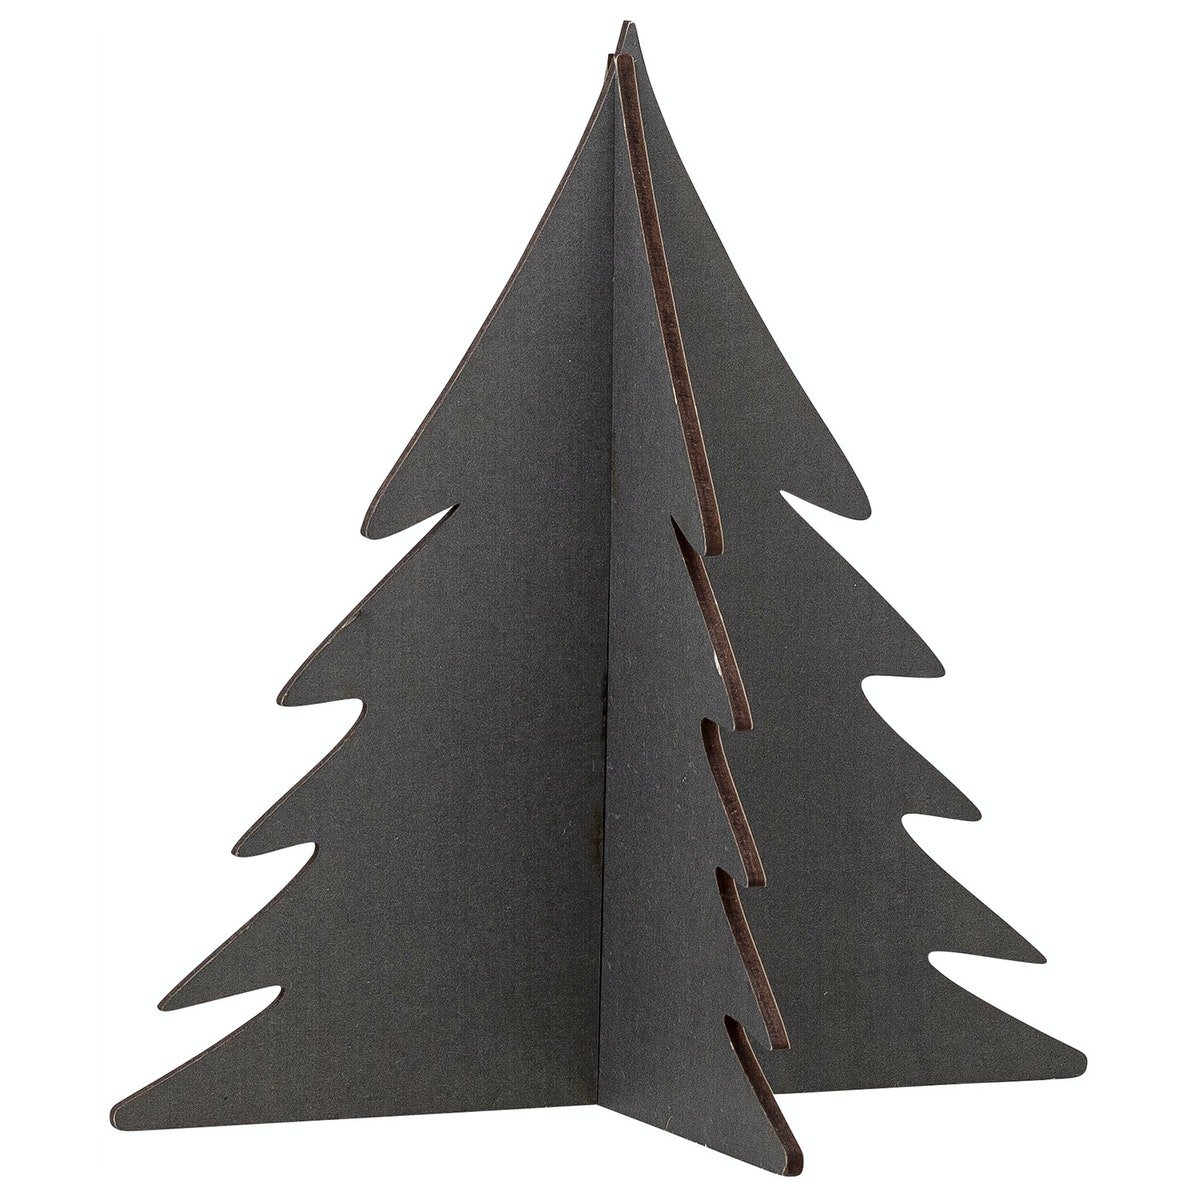 3: Pelan, Juletræ by Bloomingville (D: 15 cm. H: 12 cm. B: 16 cm., Grøn)